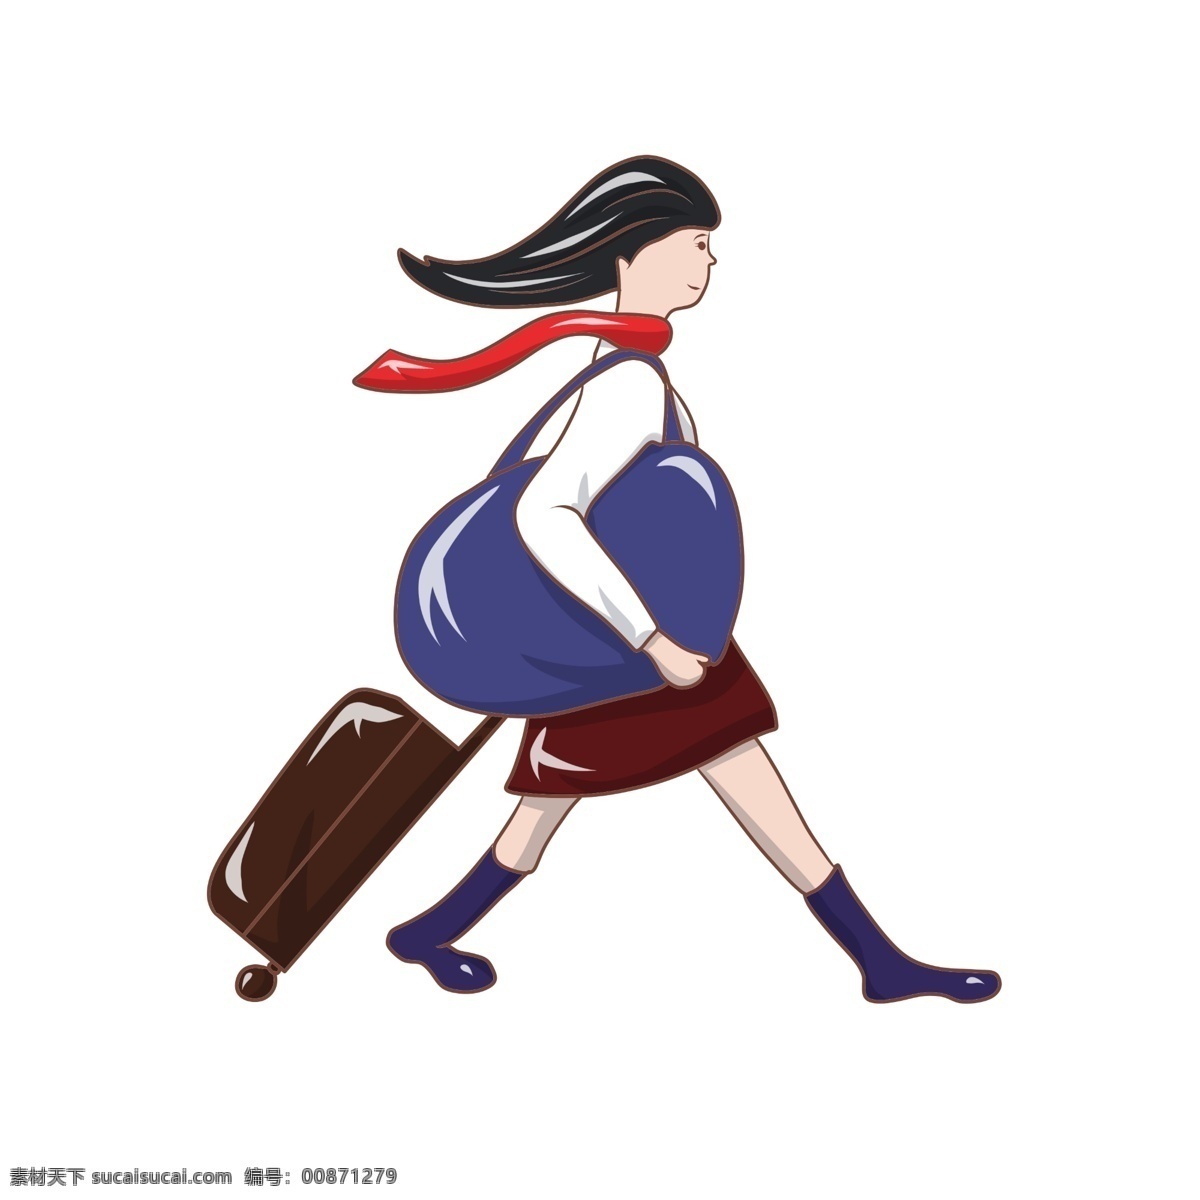 拉 行李箱 女孩 插画 穿裙子的女孩 回家的女孩 快步走的女孩 棕色的拉杆箱 长黑发的女孩 背 大 包包